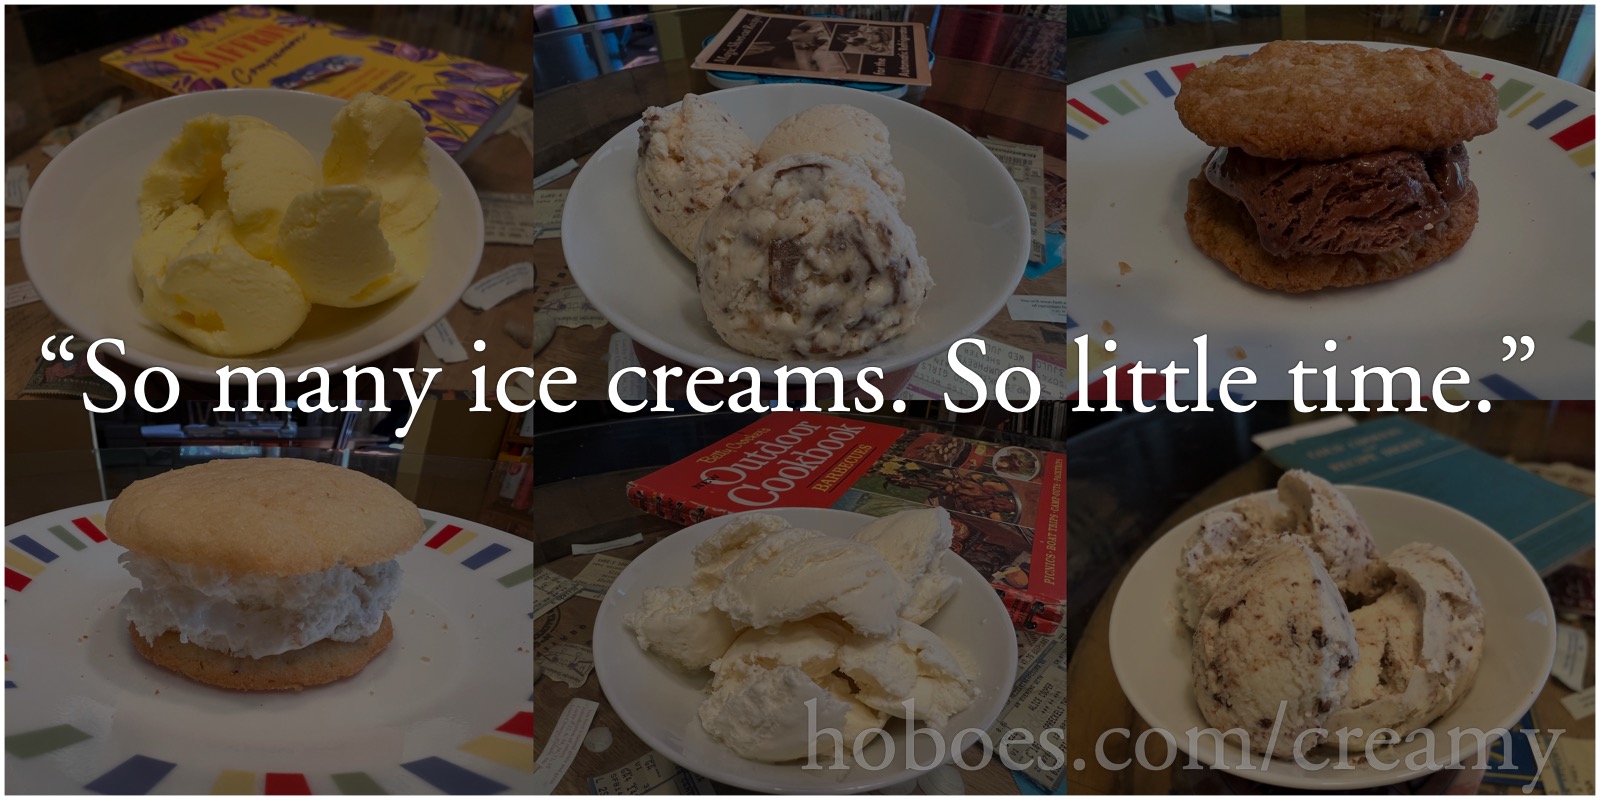 So many ice creams